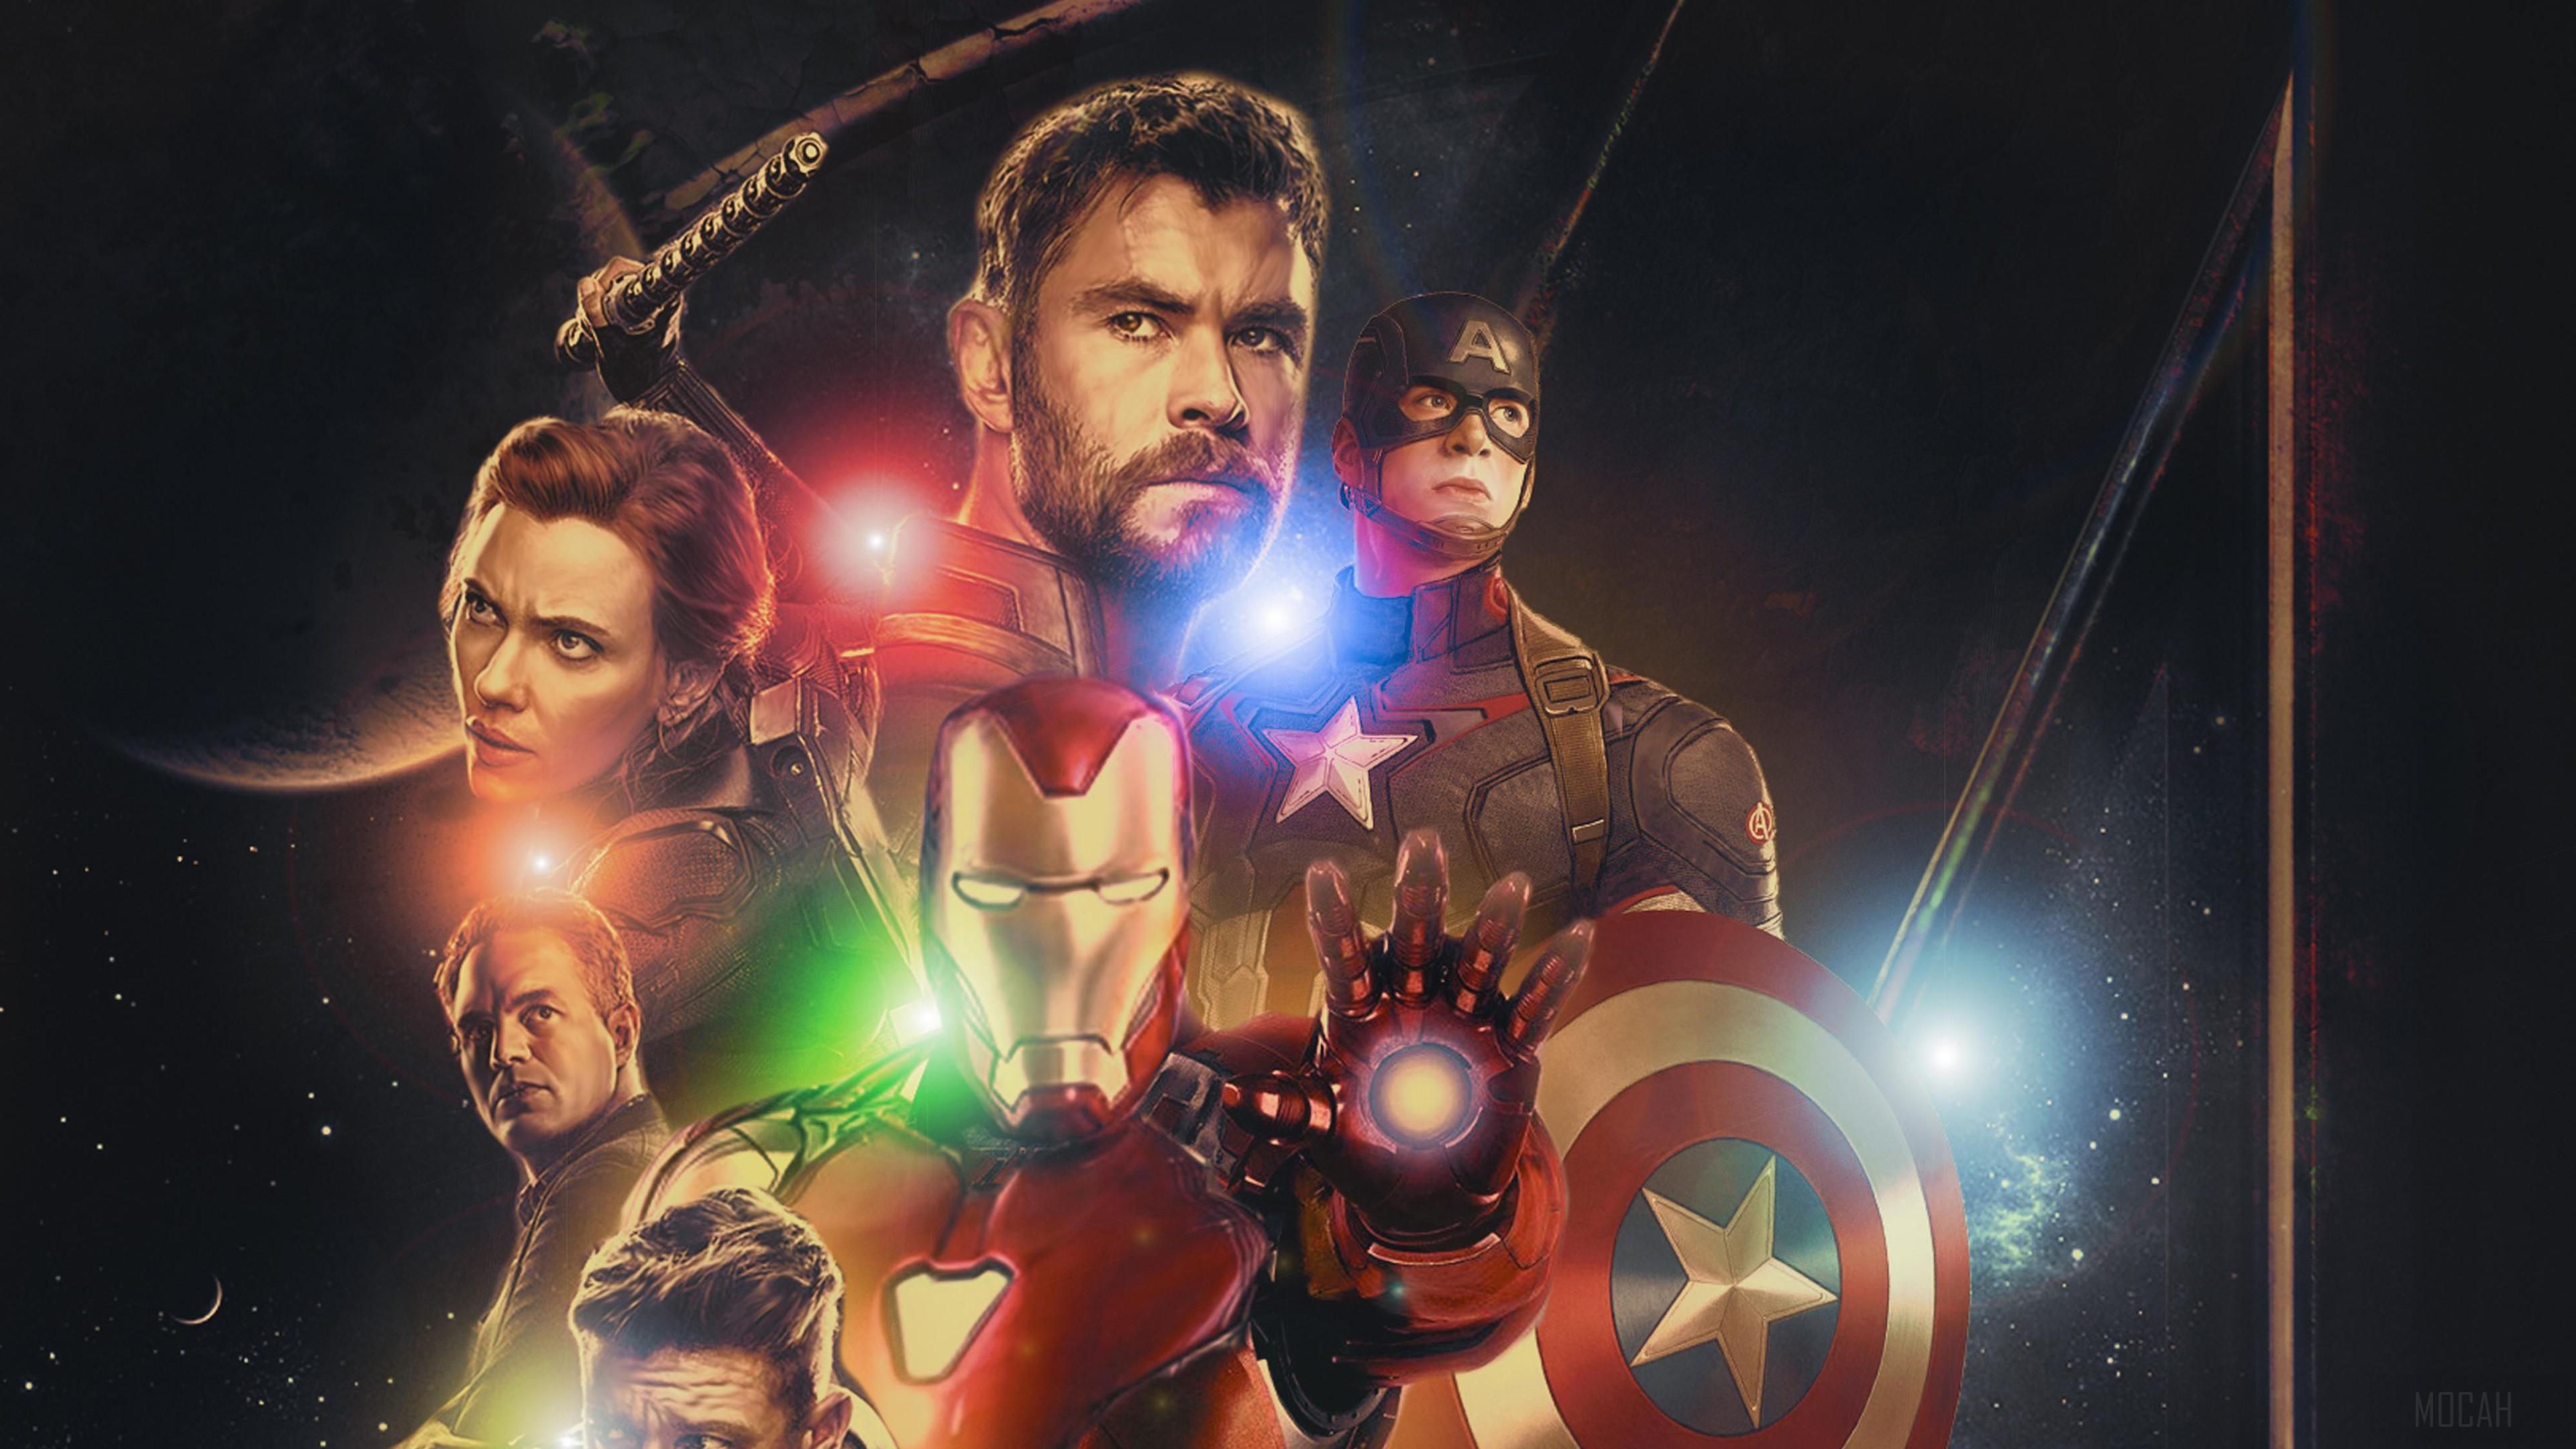 HD wallpaper, 2019 Avengers Endgame 4K